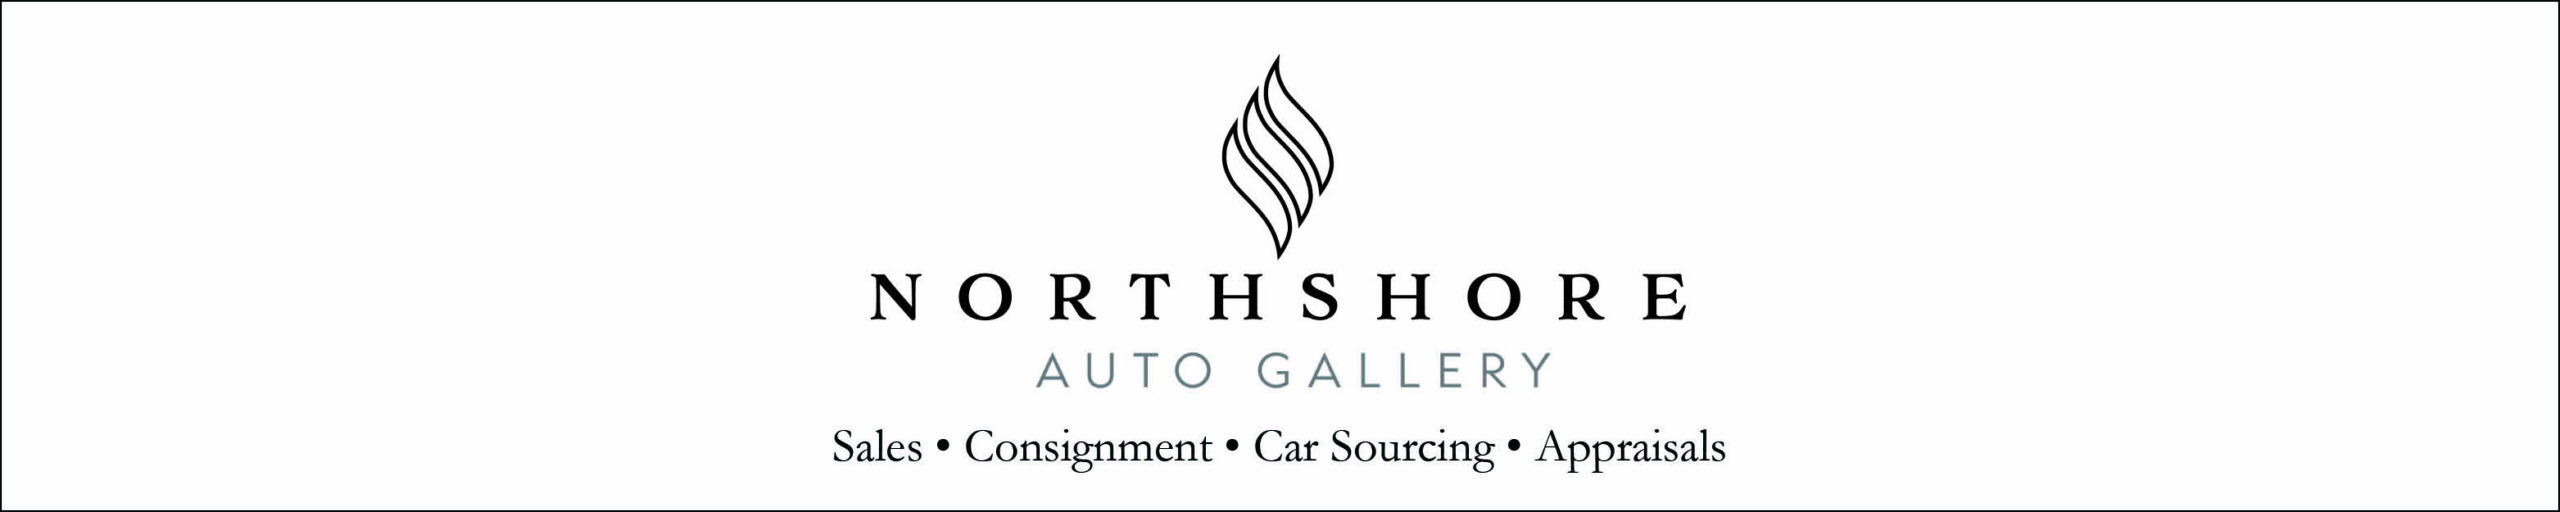 Northshore Auto Gallery ad